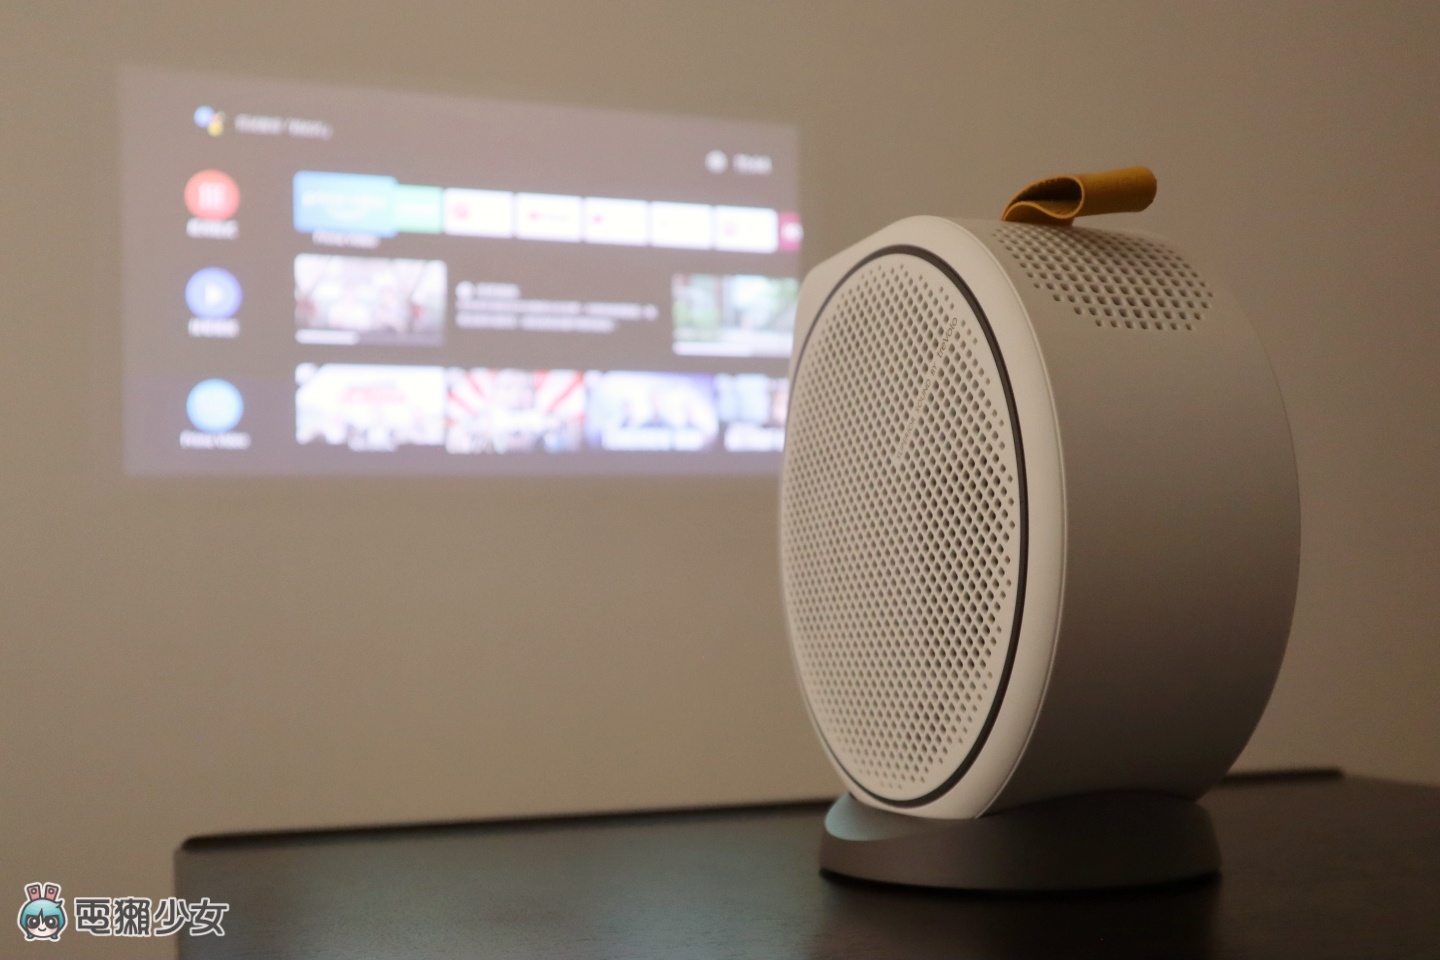 把家裡打造成小電影院！BenQ 微型投影機『 GV30 』多角度調整超輕鬆 支援 2.1 聲道的喇叭帶給你震撼音效